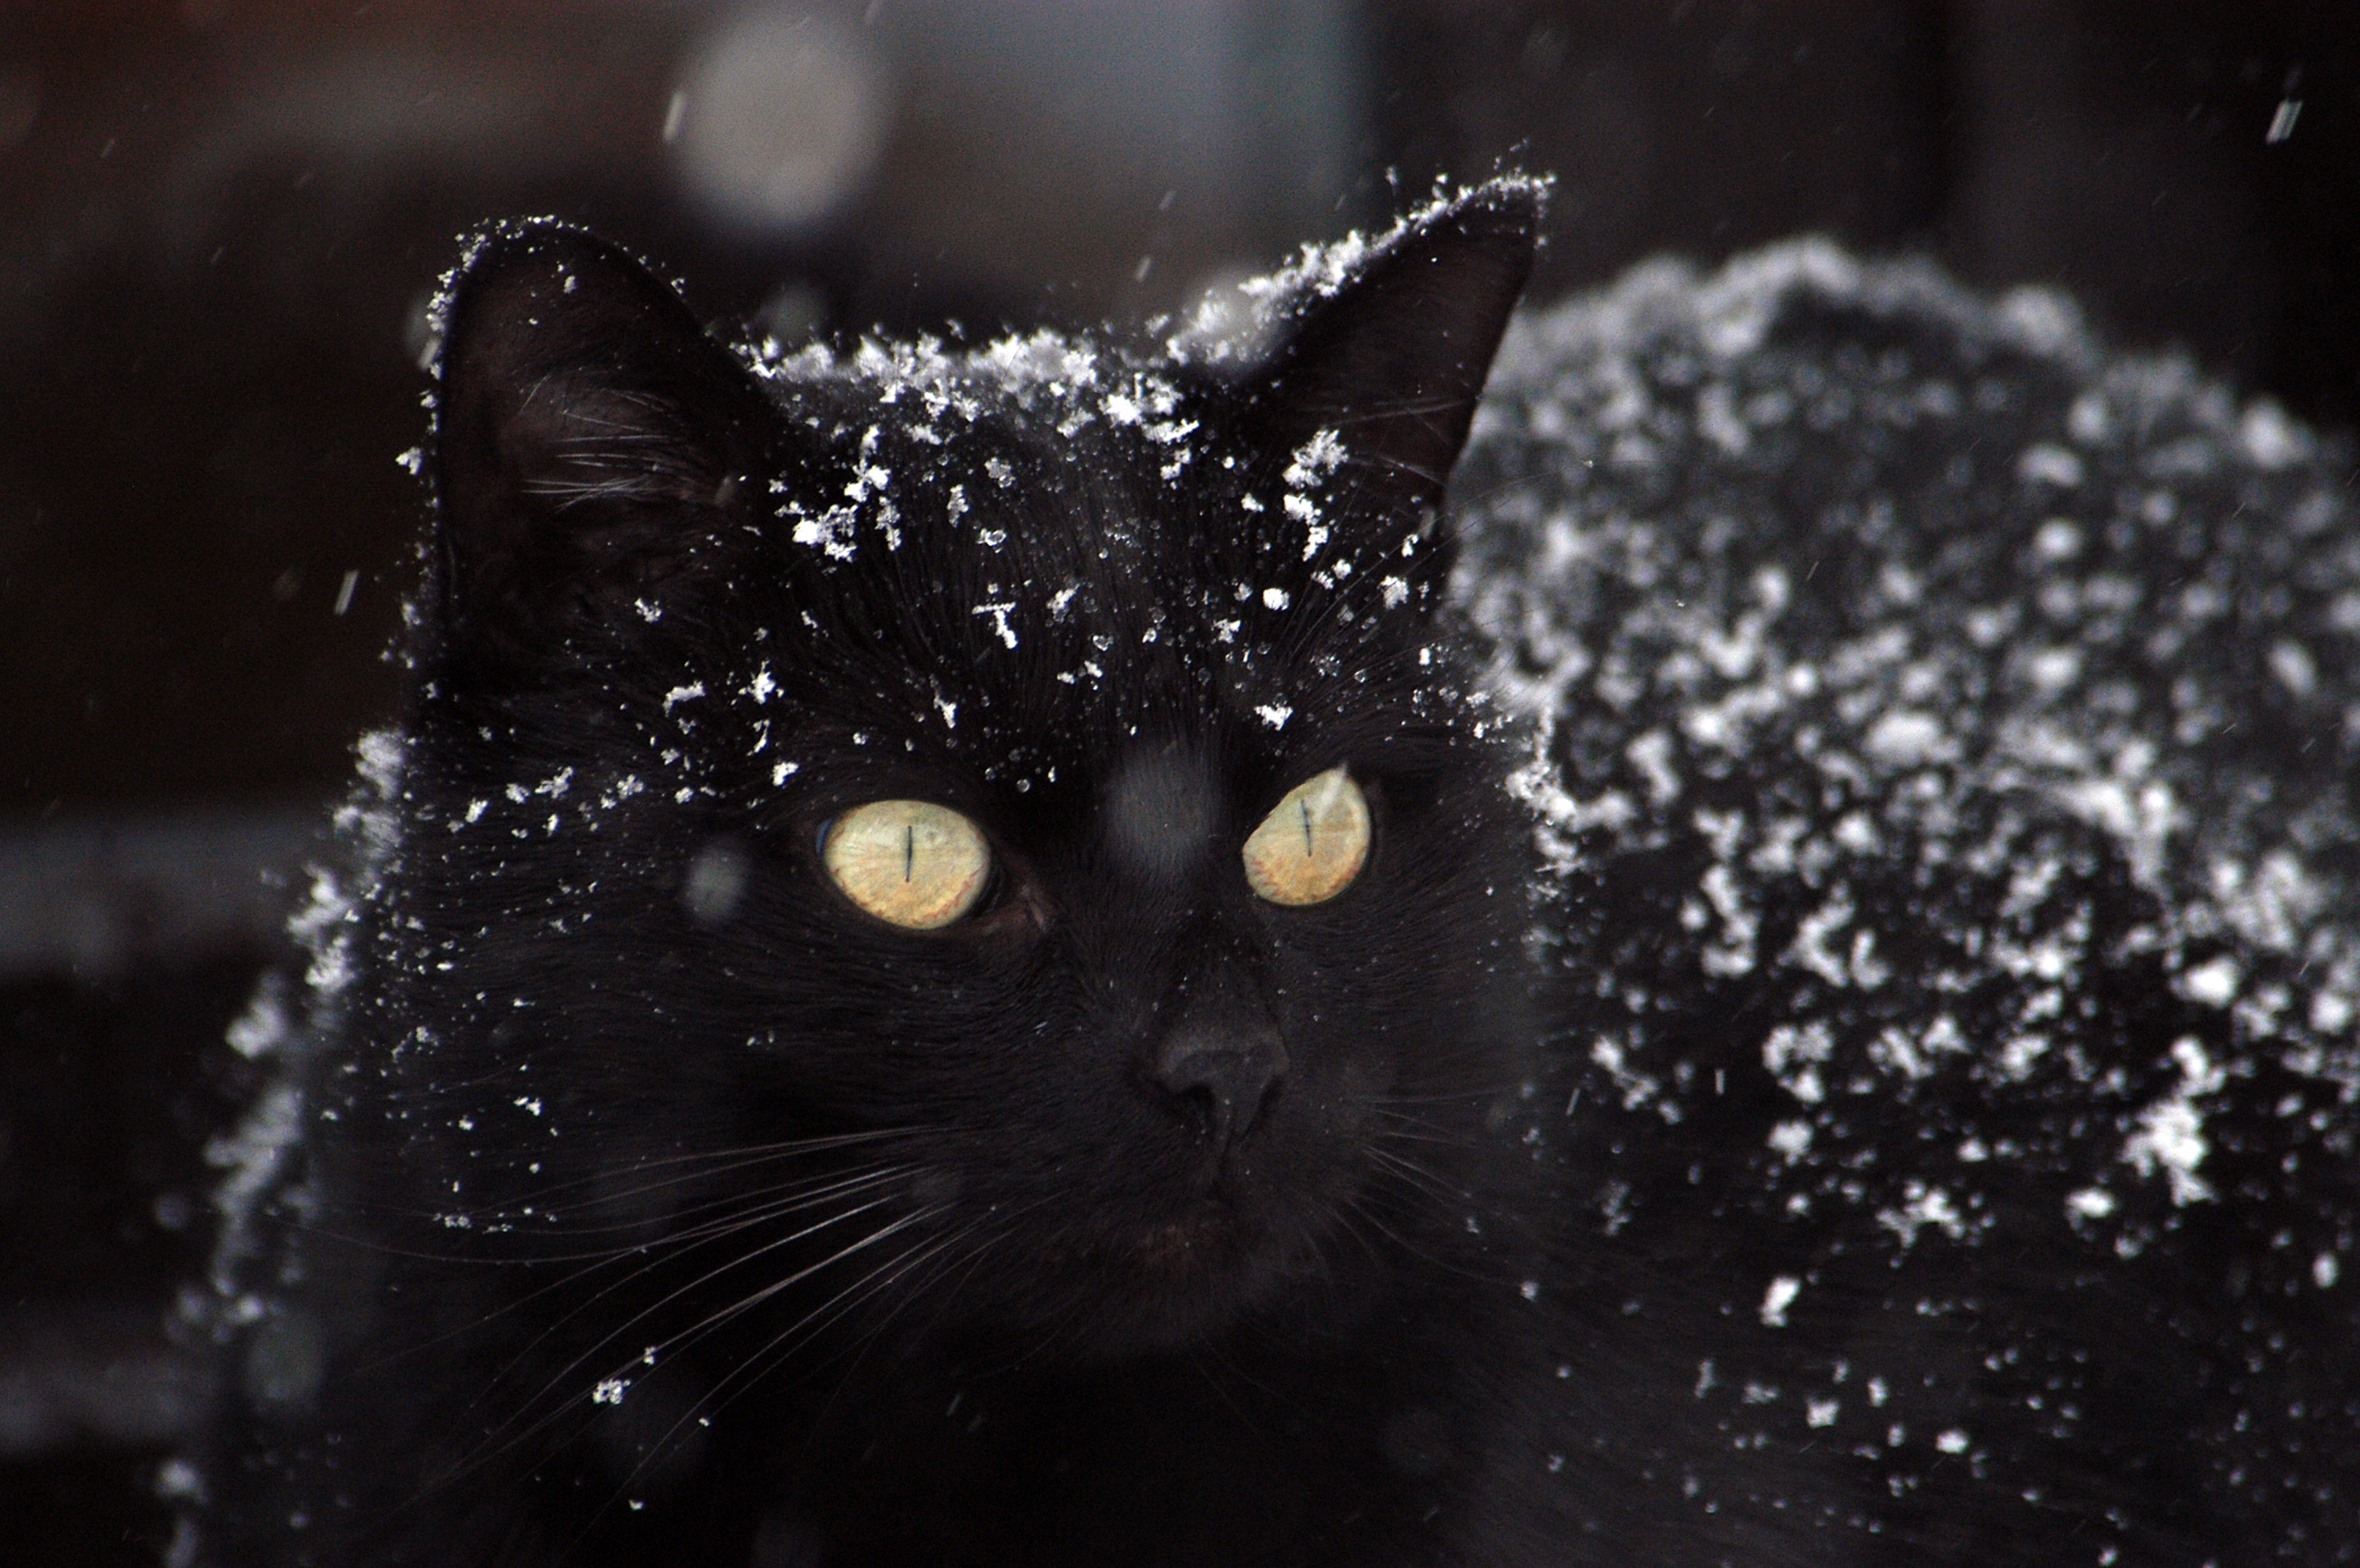 Черный кот в снегу